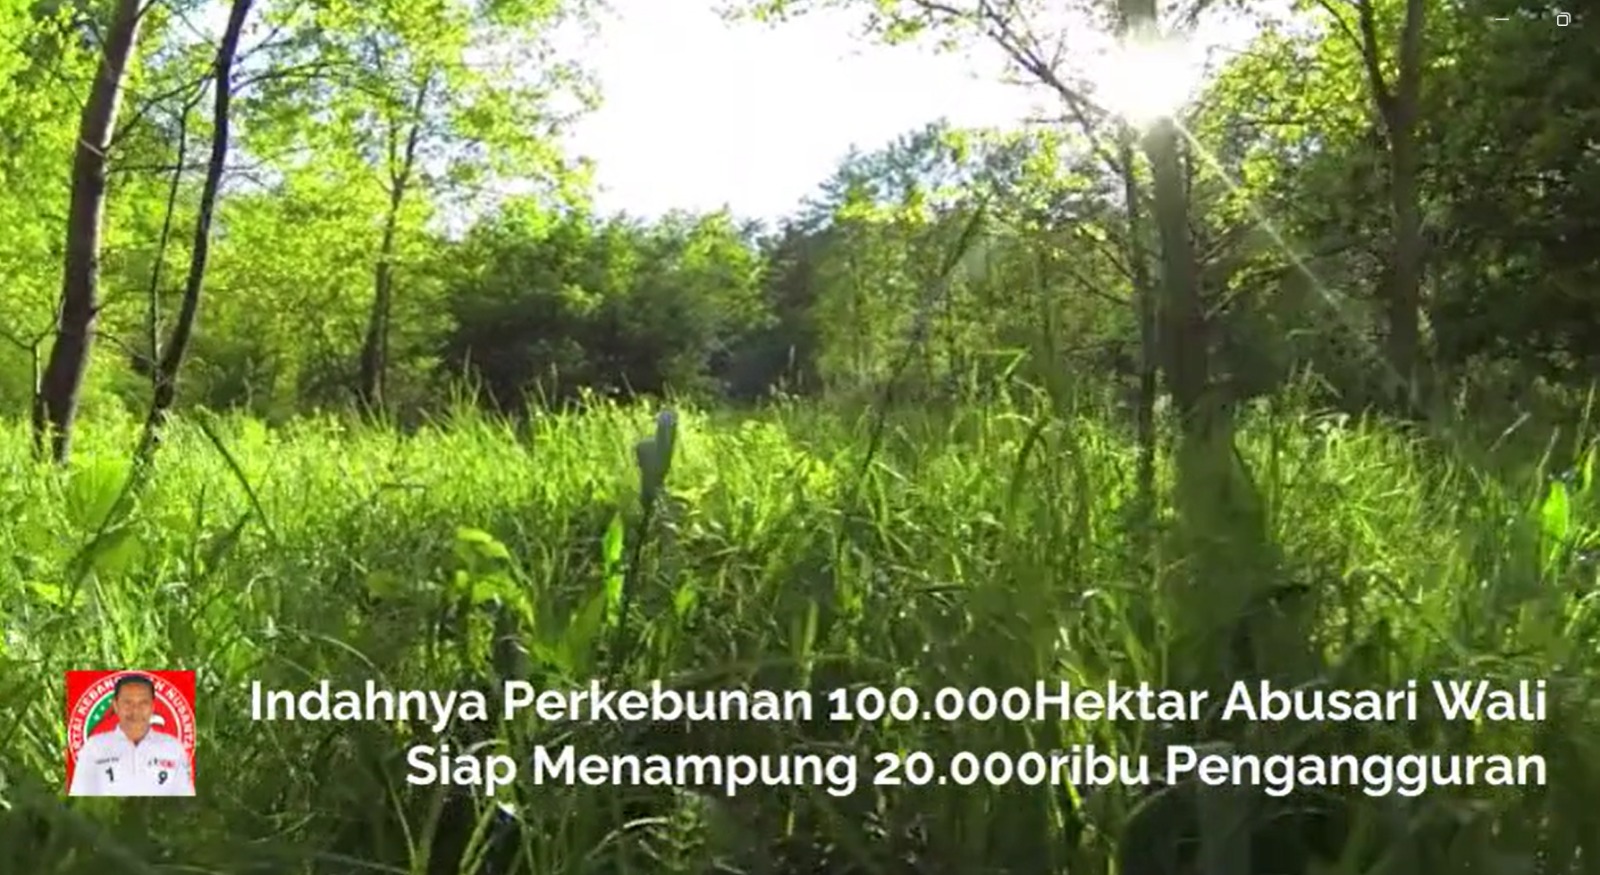 Perkebunan 100.000 Hektar Milik Abusari Wali Caleg DPR RI Dapil Provinsi Sulawesi Tenggara, Siap Menampung 20.000 Pengangguran